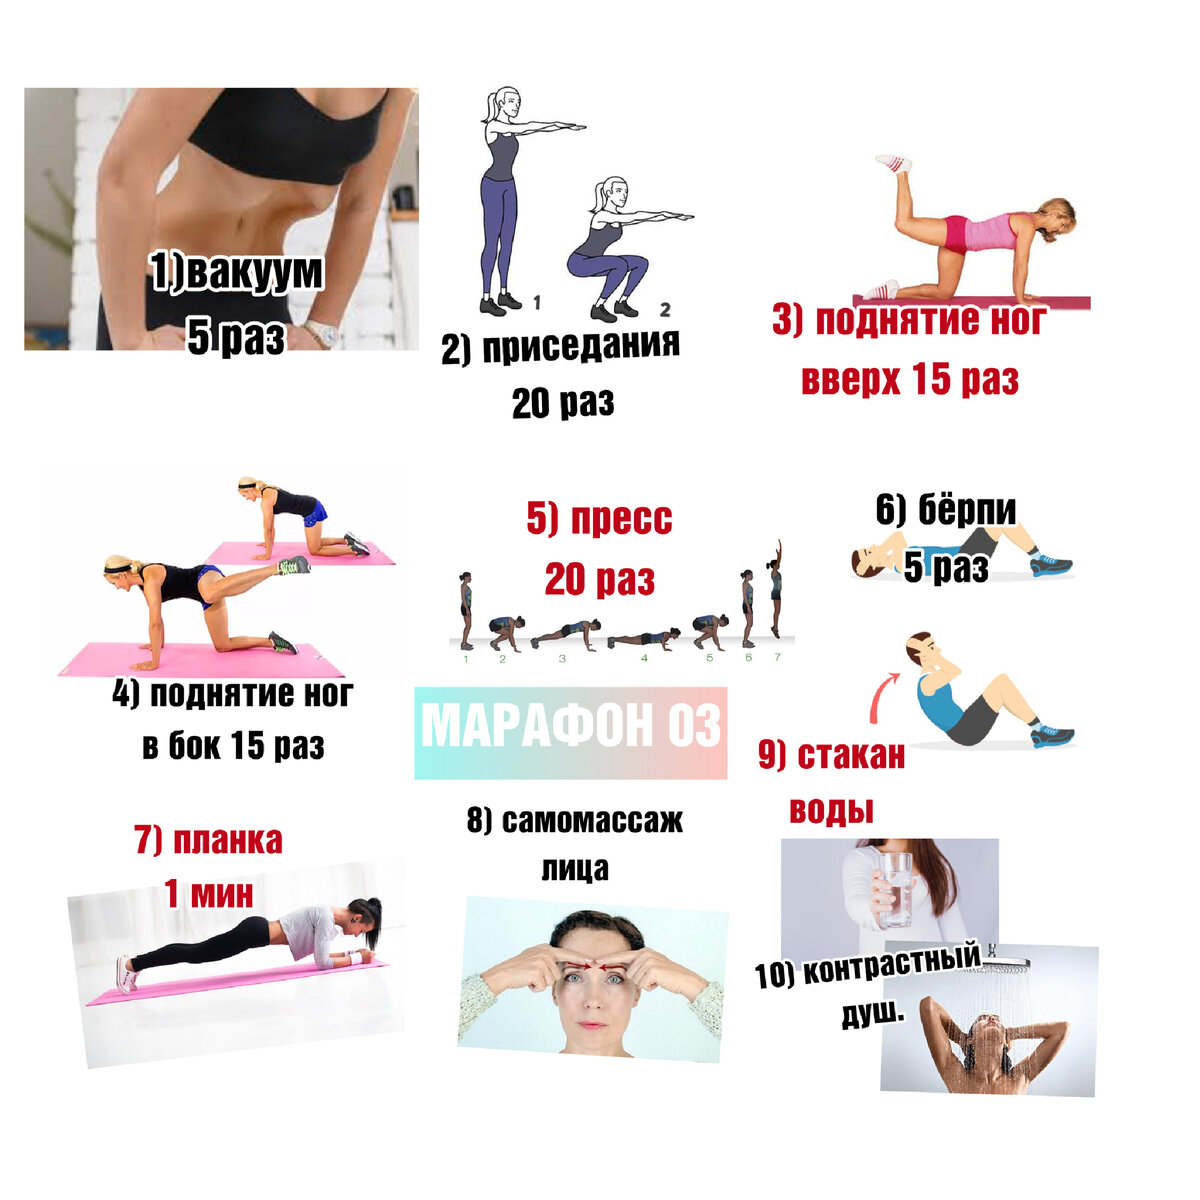 Похудеть за 30 дней видео. Упражнения на каждый день. Упражнения для женщин на каждый день для подтянутой фигуры. 30 Дней тренировок. Упражнения для подтяжки живота.